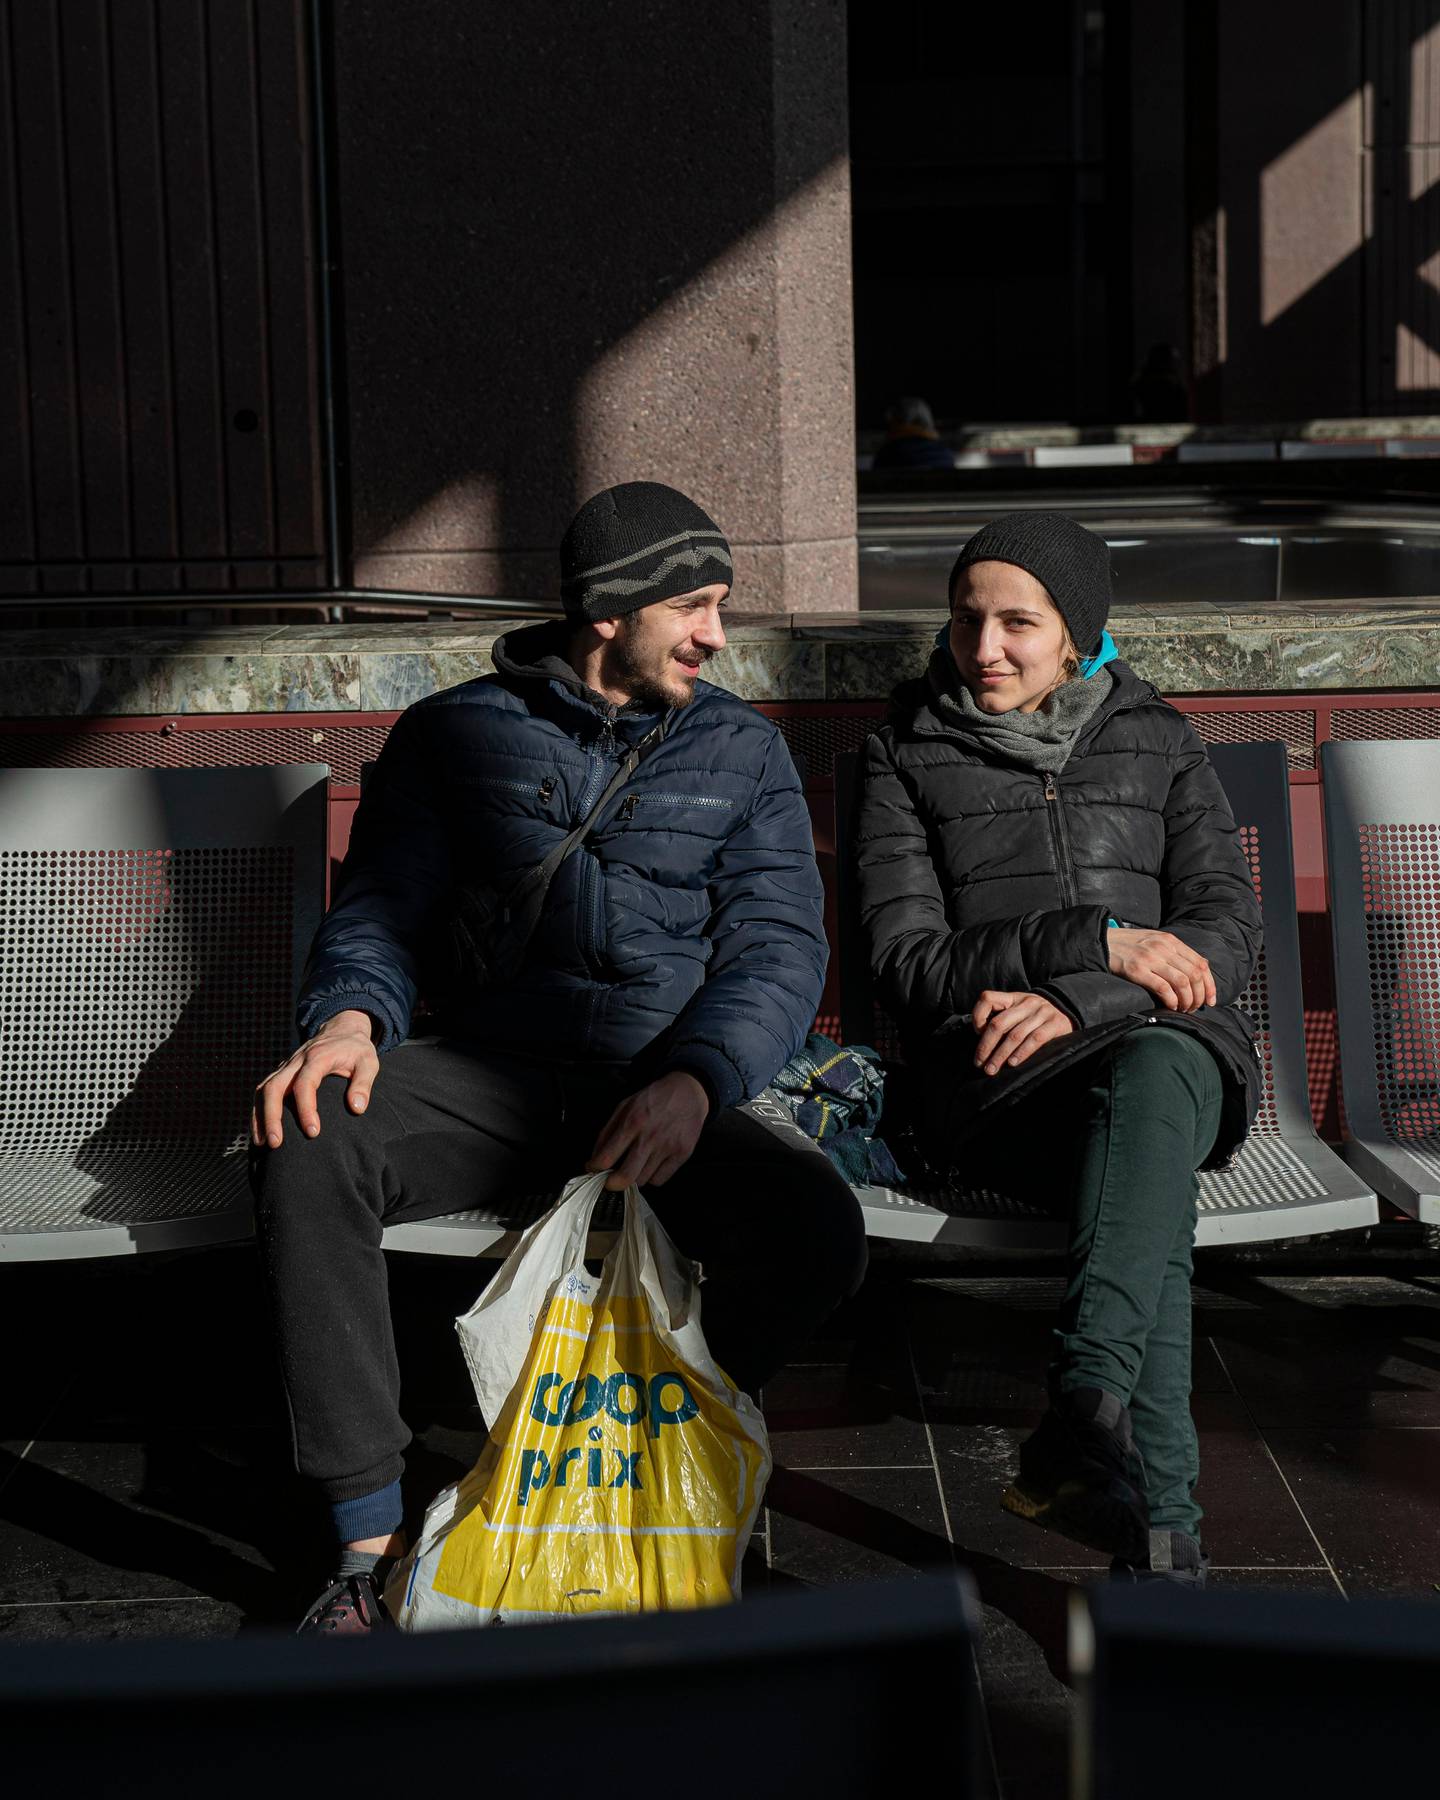 Dana og Robert ønsker bare å reise hjem til Romania så fort anledningen byr seg. De tar en pust i bakken inne på Oslo sentralstasjon mens de venter.